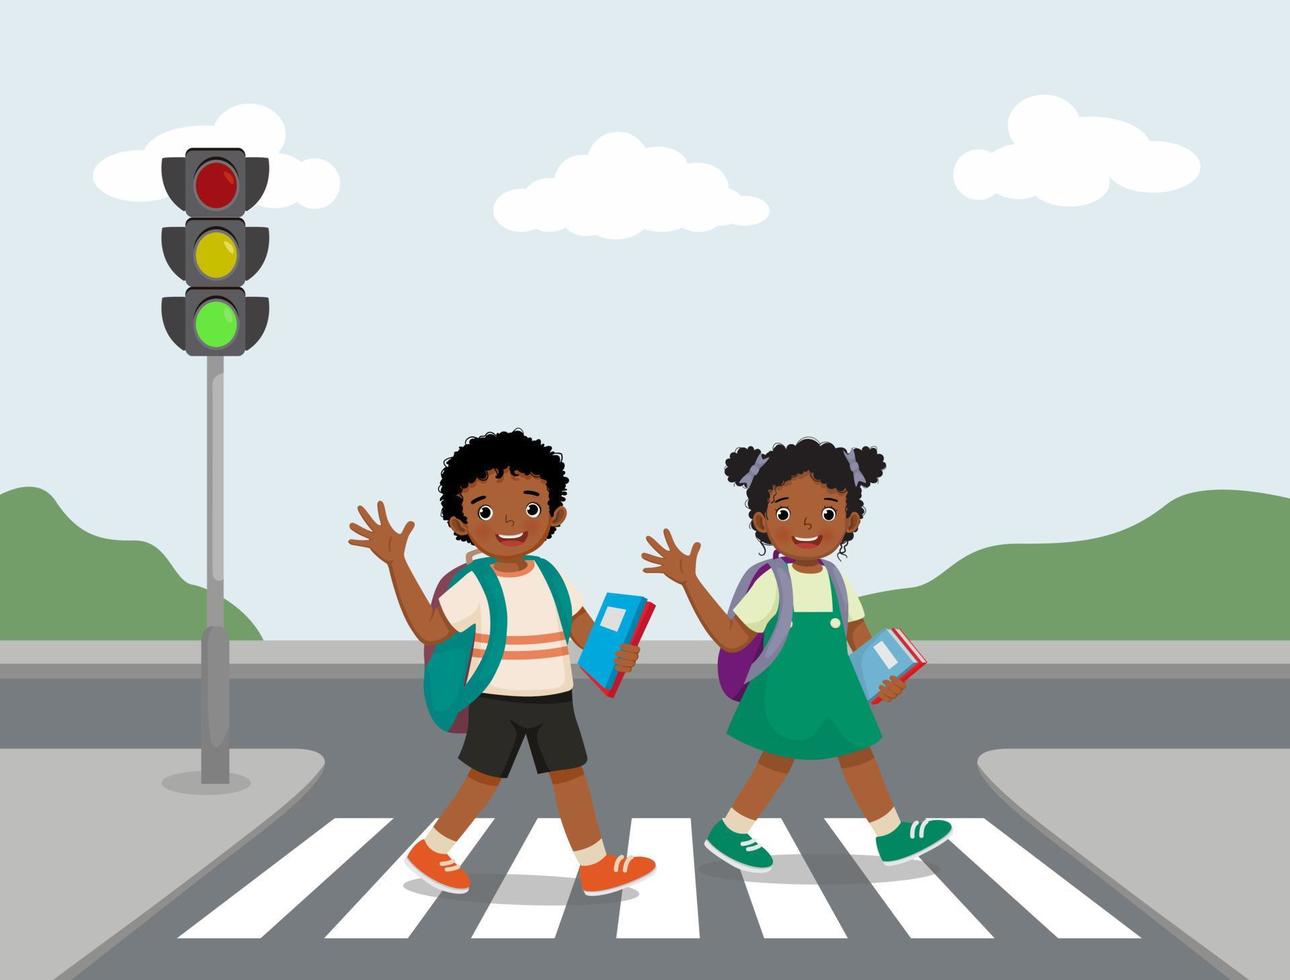 mignons écoliers africains avec sac à dos en agitant les mains marchant traversant la route près du feu de circulation sur le passage clouté sur le chemin de l'école vecteur